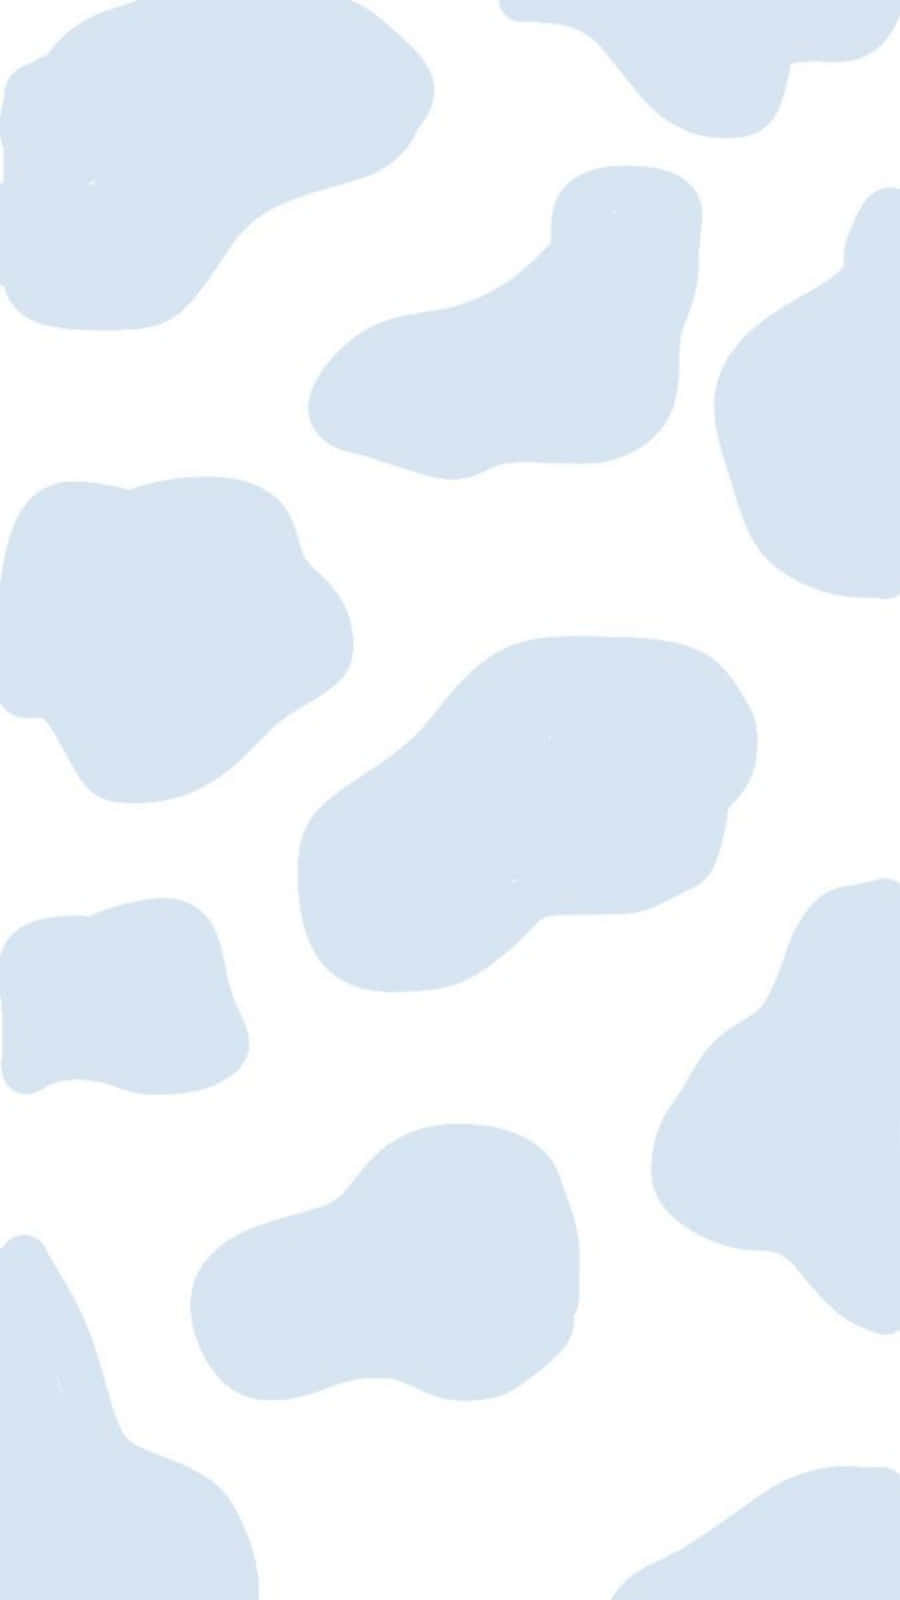 Eineweiße Kuh Mit Blauen Flecken – Einladend Und Verspielt Wallpaper